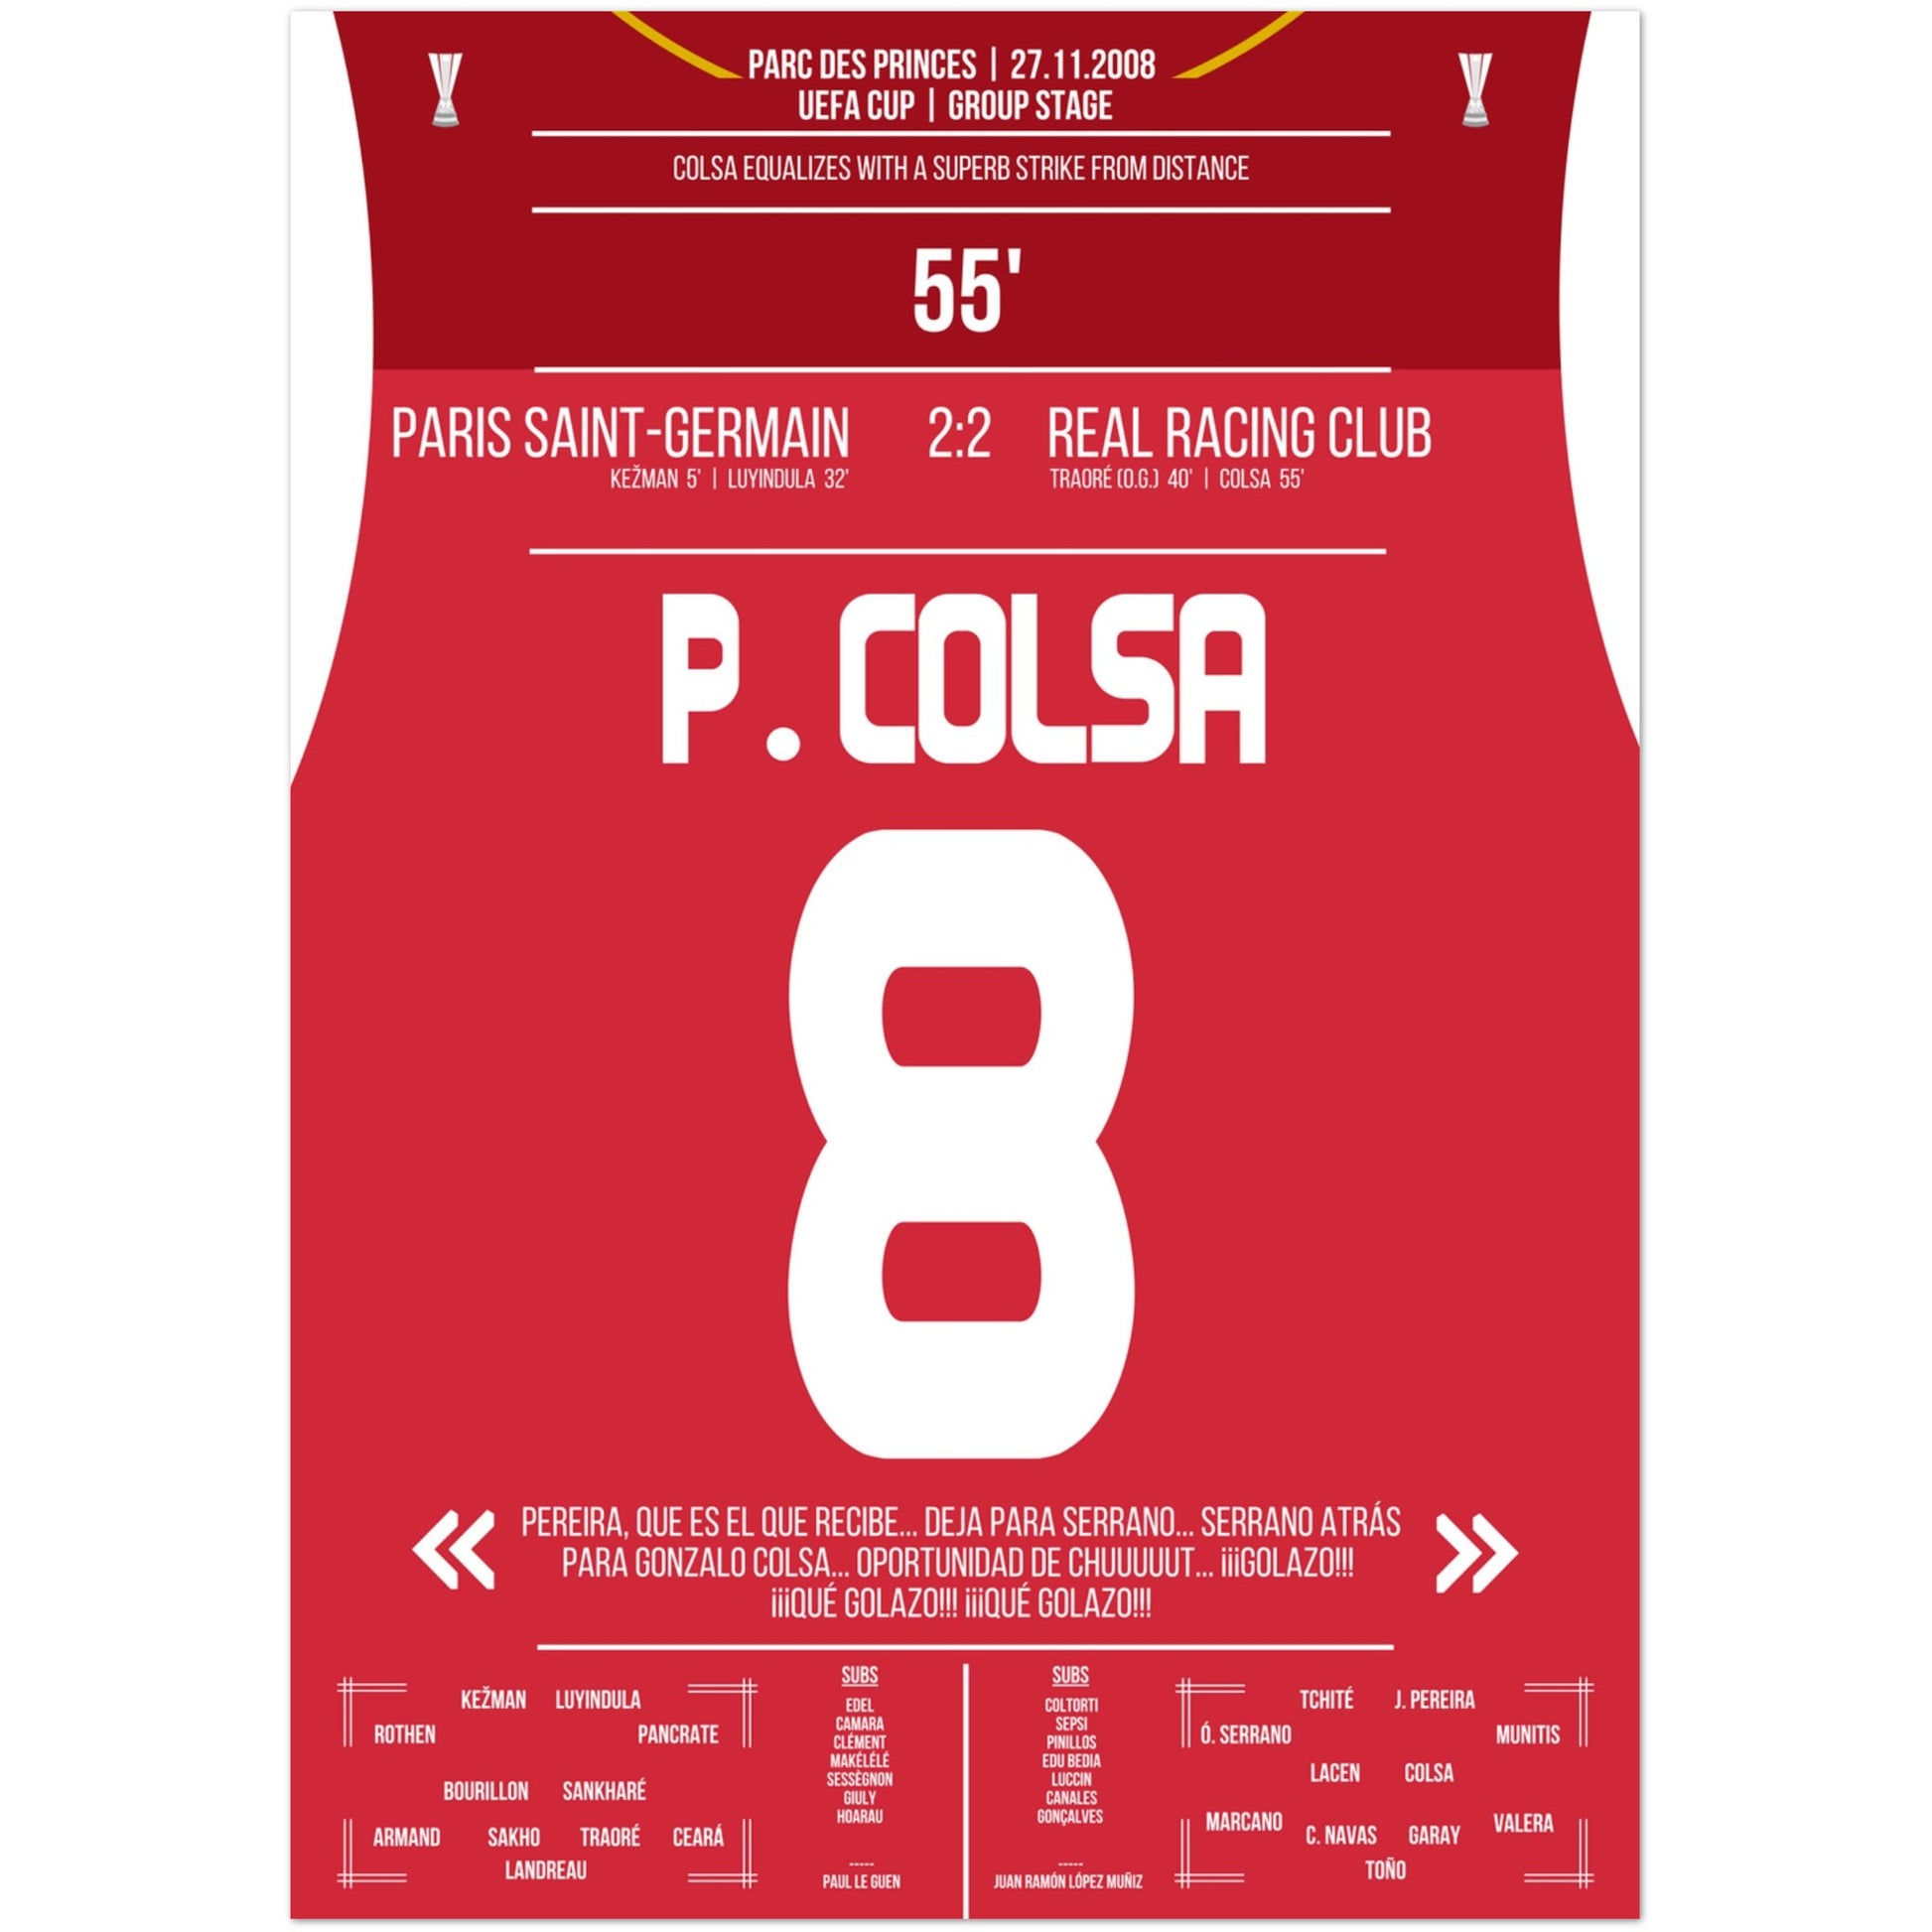 Colsa's Traumtor aus der Distanz gegen PSG in 2008 A4-21x29.7-cm-8x12-Ohne-Rahmen